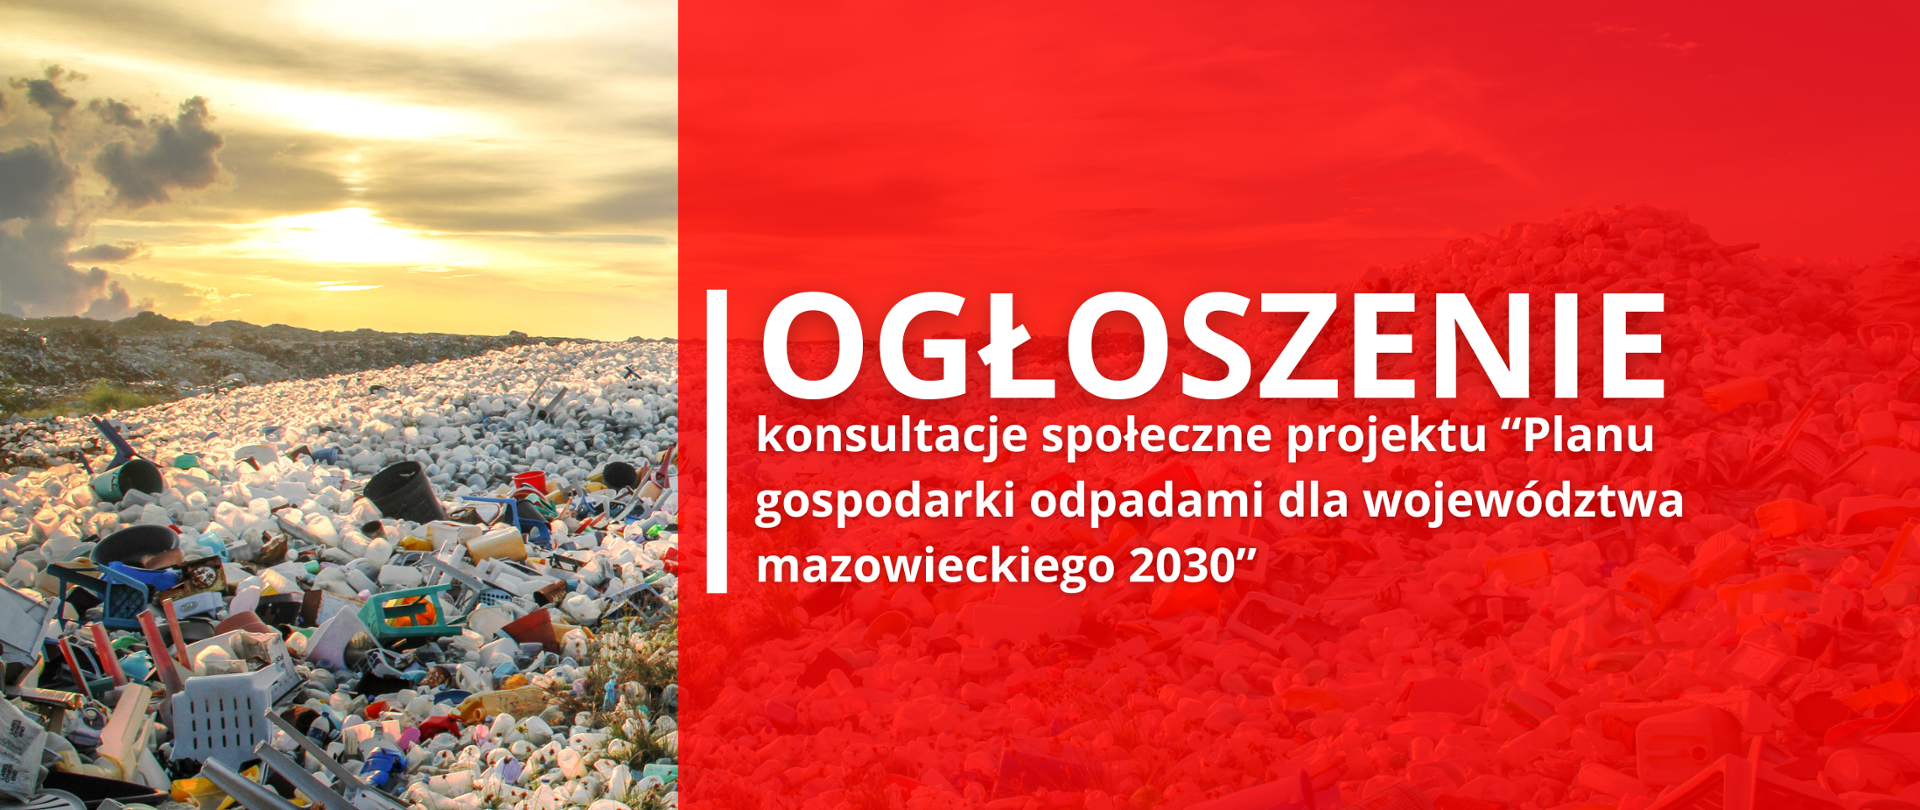 W tle wysypisko śmieci, na pierwszym planie czerwony prostokąt oraz tekst: "Ogłoszenie konsultacje społeczne projektu "Planu gospodarki odpadami dla województwa mazowieckiego 2030". 